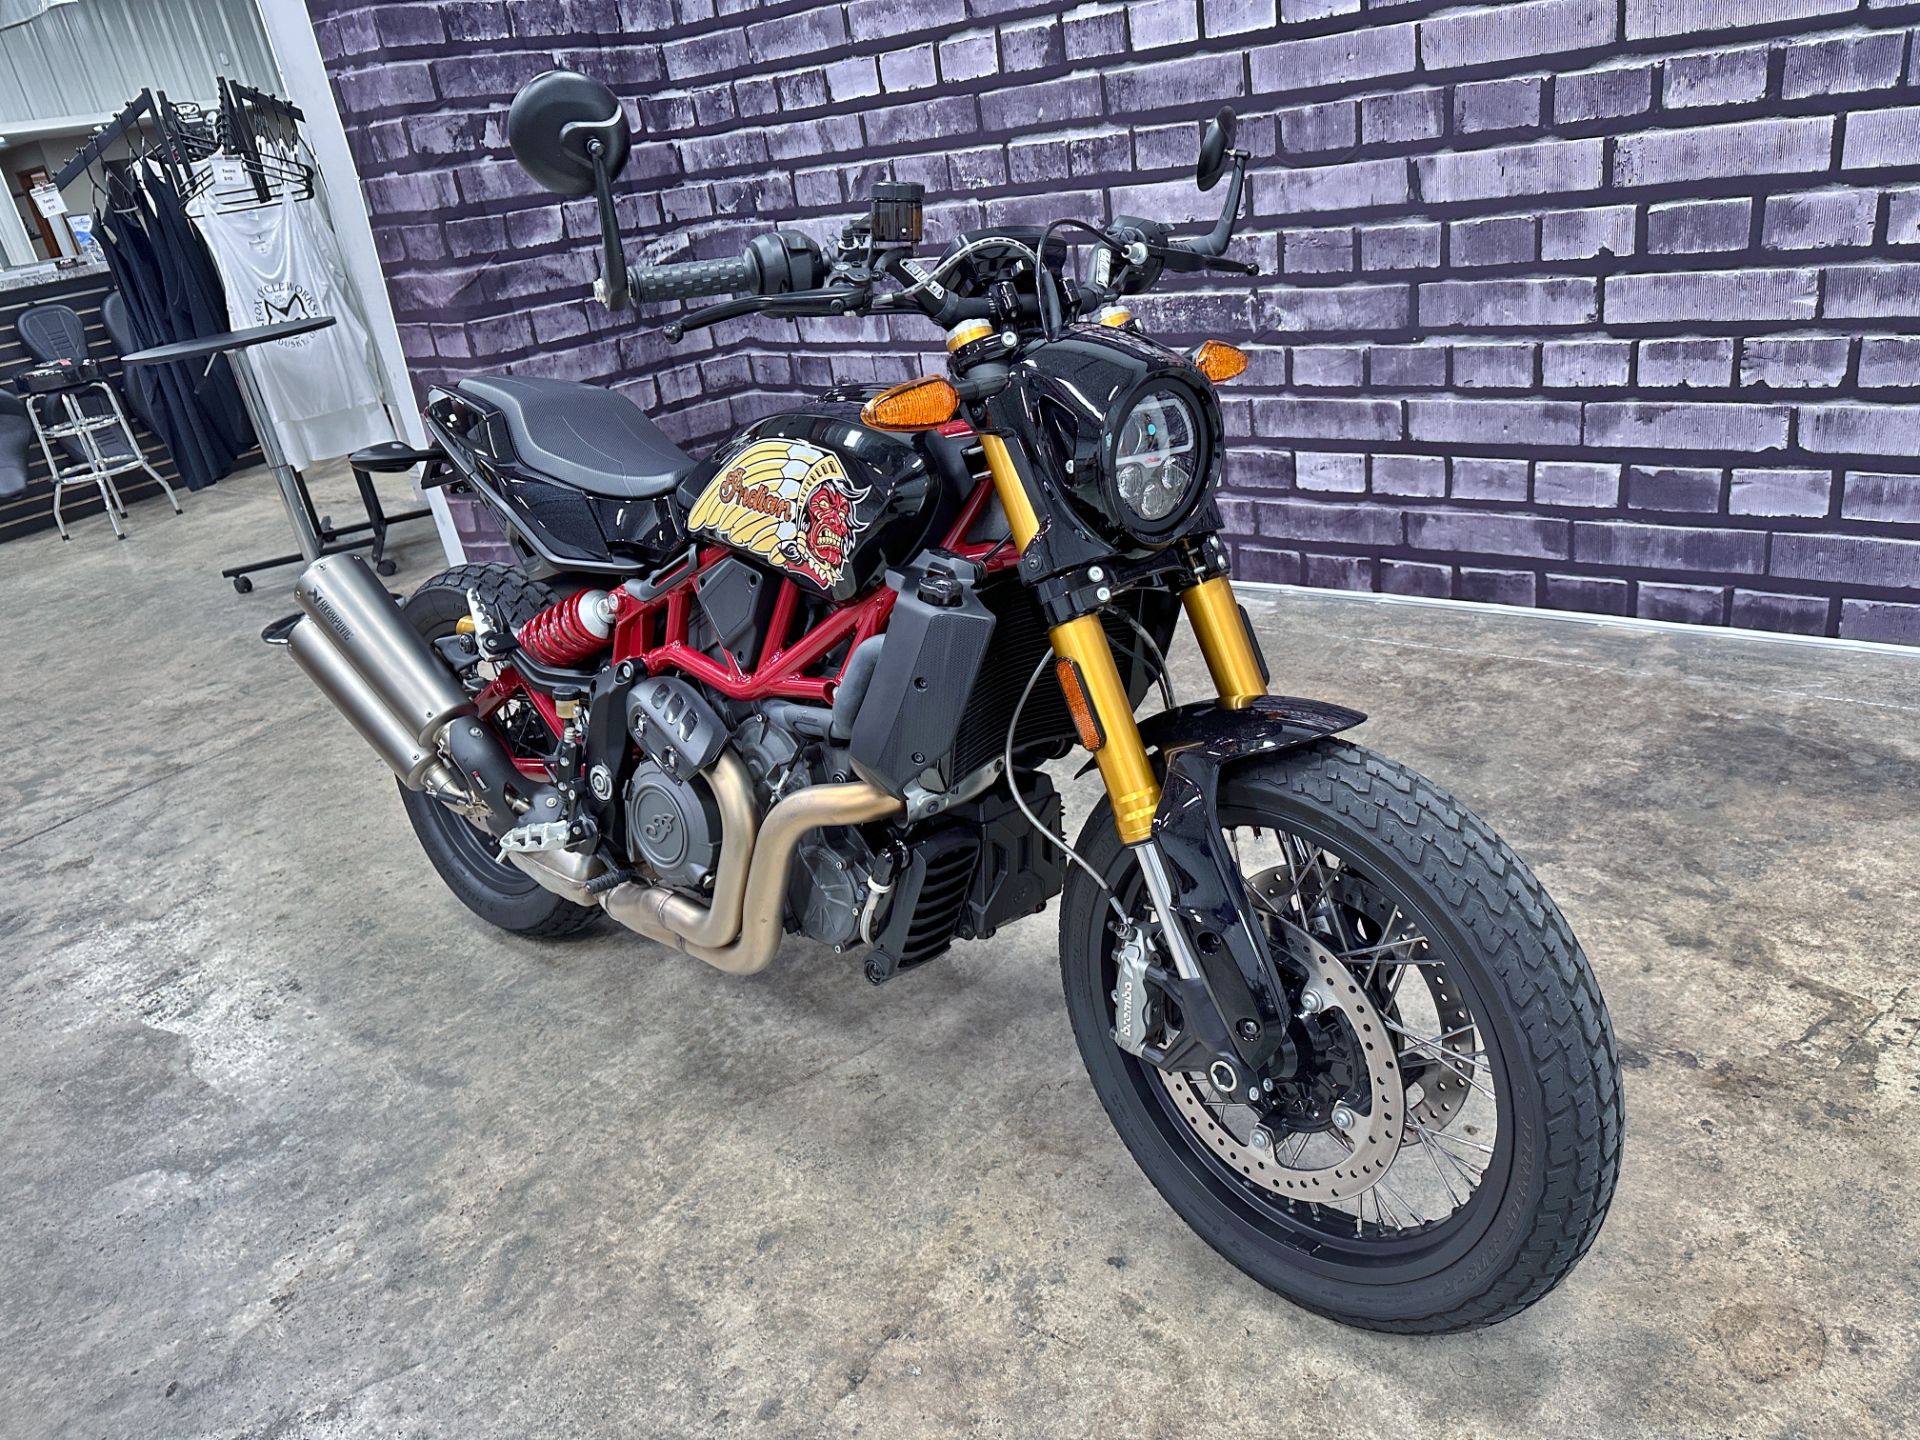 2019 Indian Motorcycle FTR™ 1200 S in Sandusky, Ohio - Photo 3